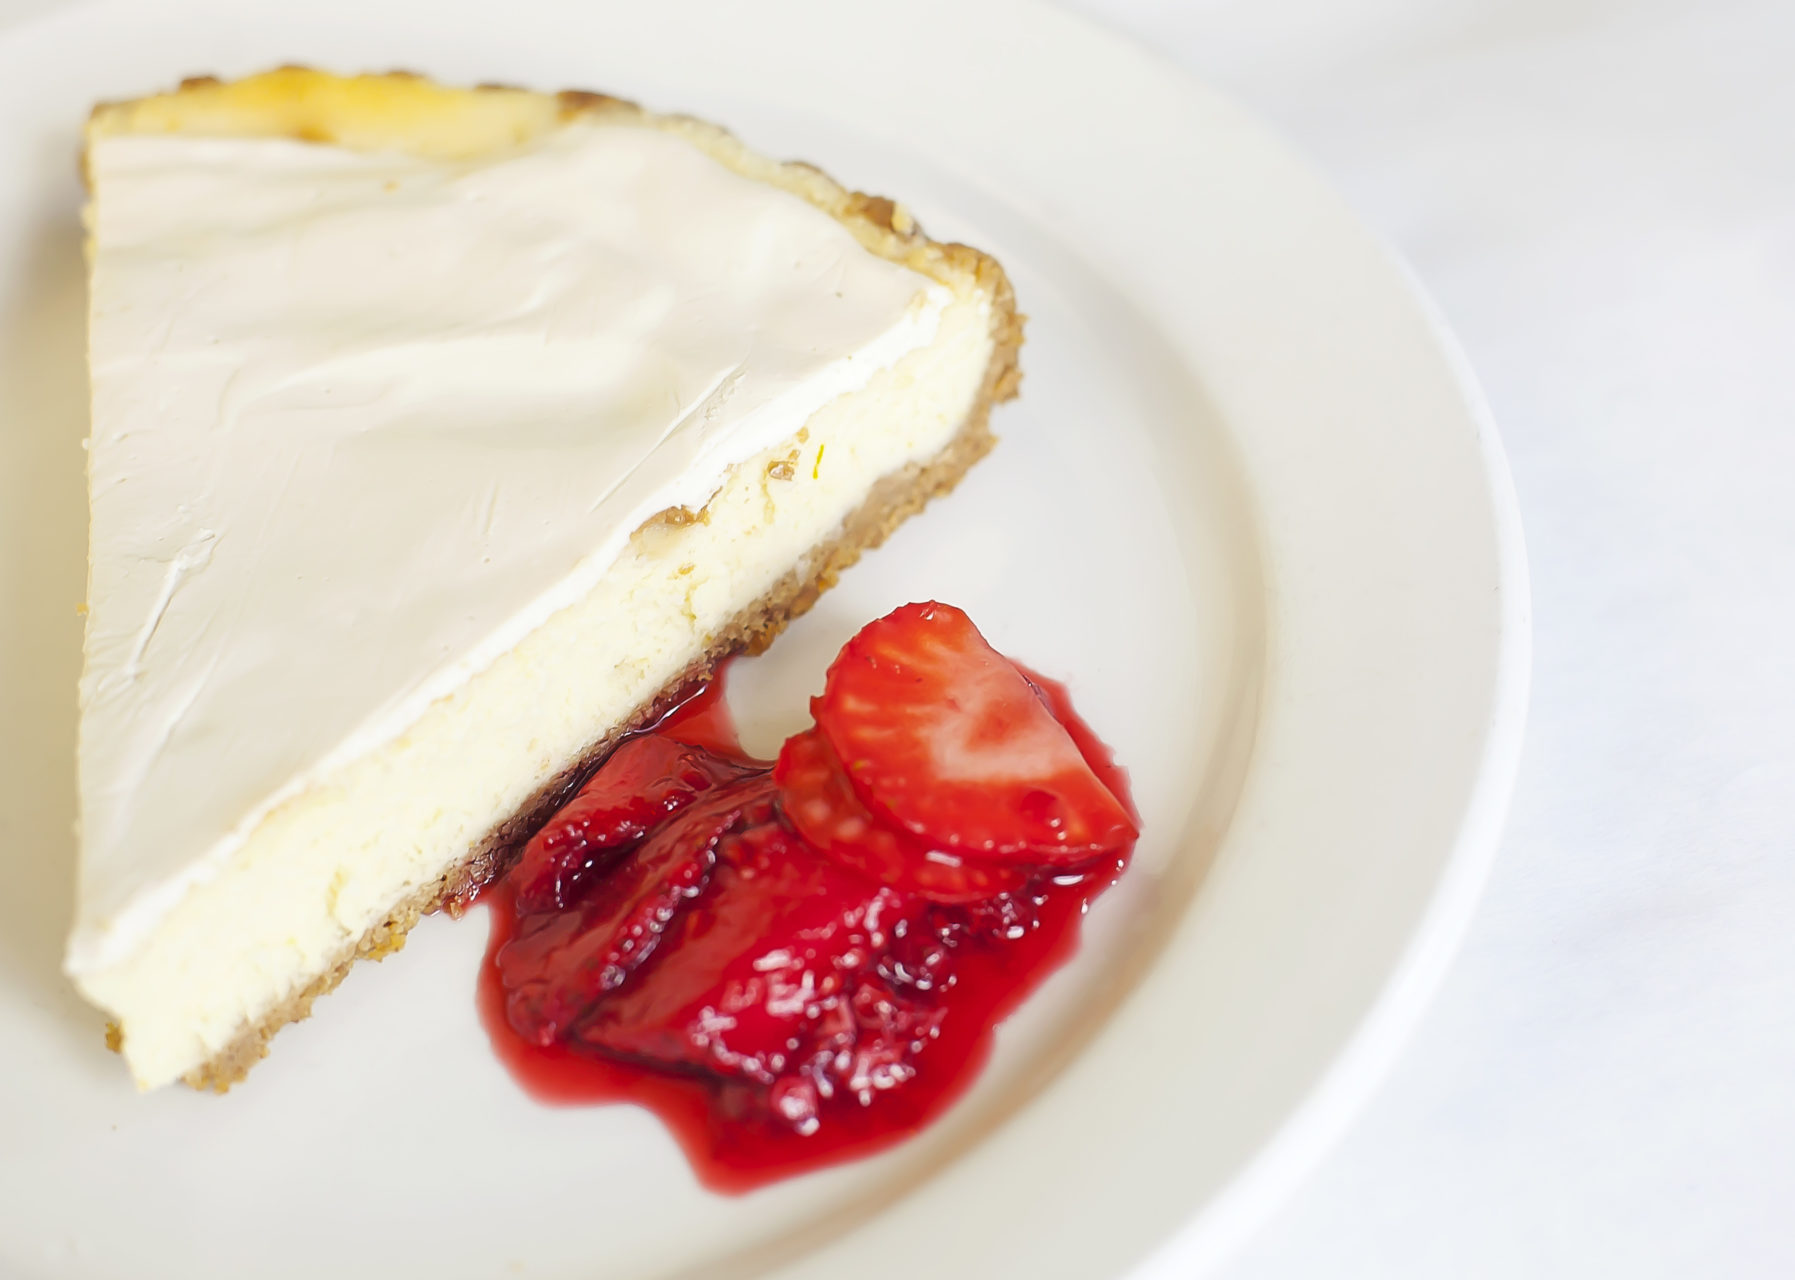 Cheesecake tart with fresh strawberries